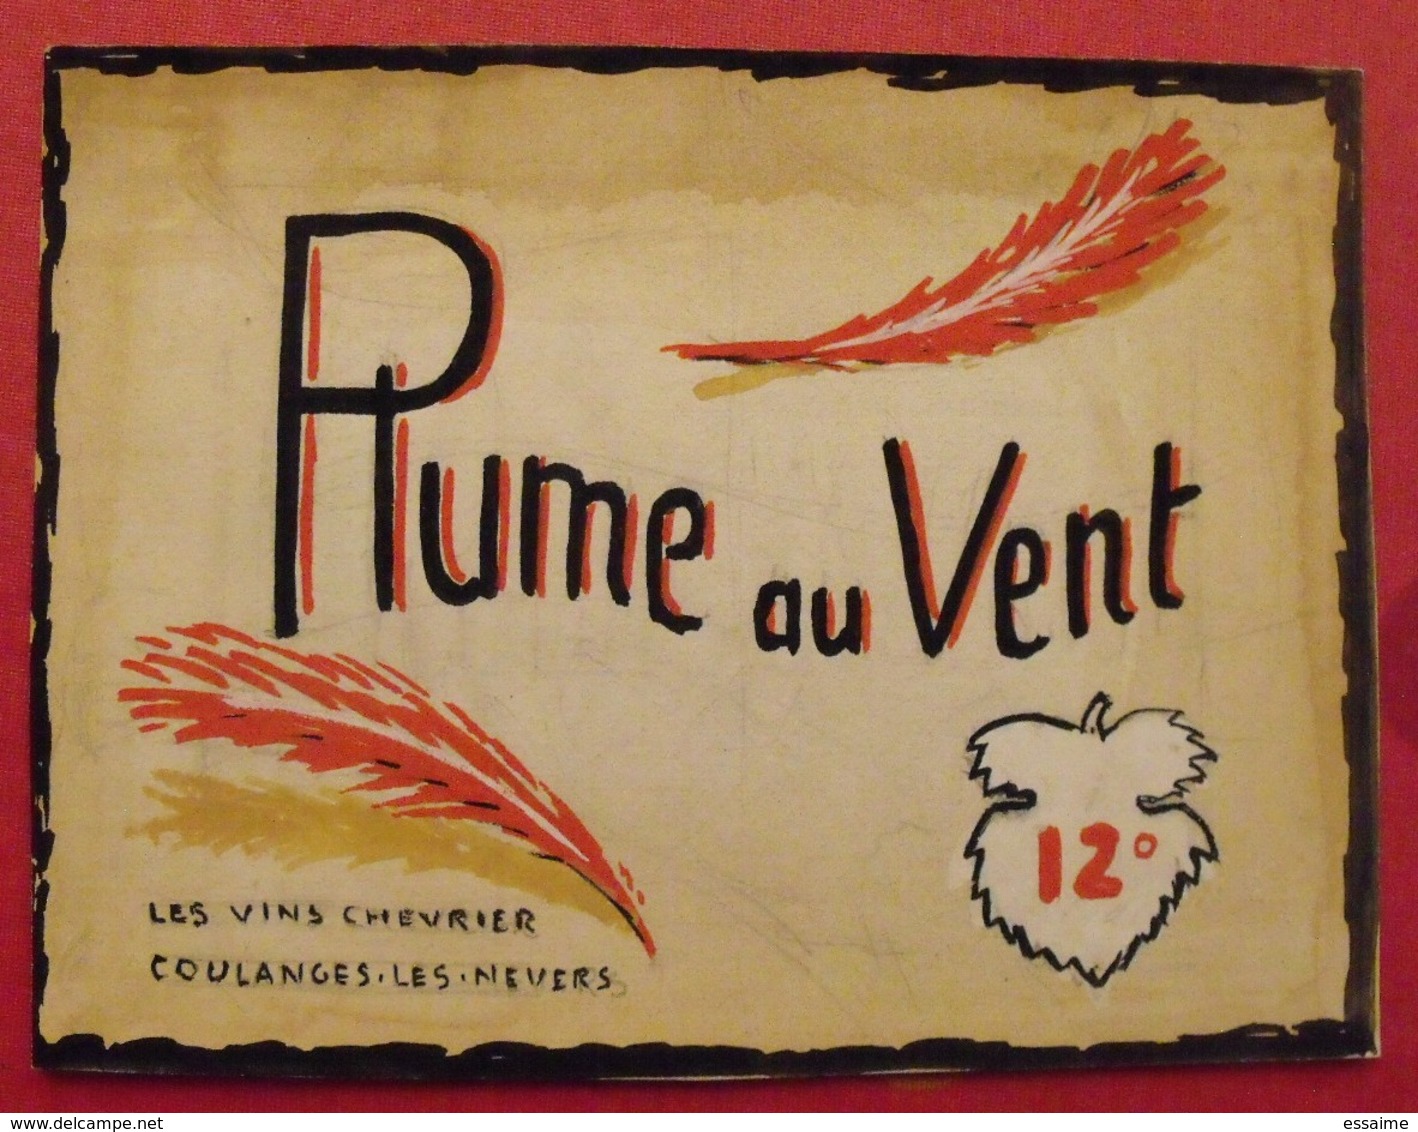 Maquette Gouache D'une étiquette De Vin. Plume Au Vent. Vins Chevrier Coulanges-les-Nevers. Dejoie Vers 1960 - Alcools